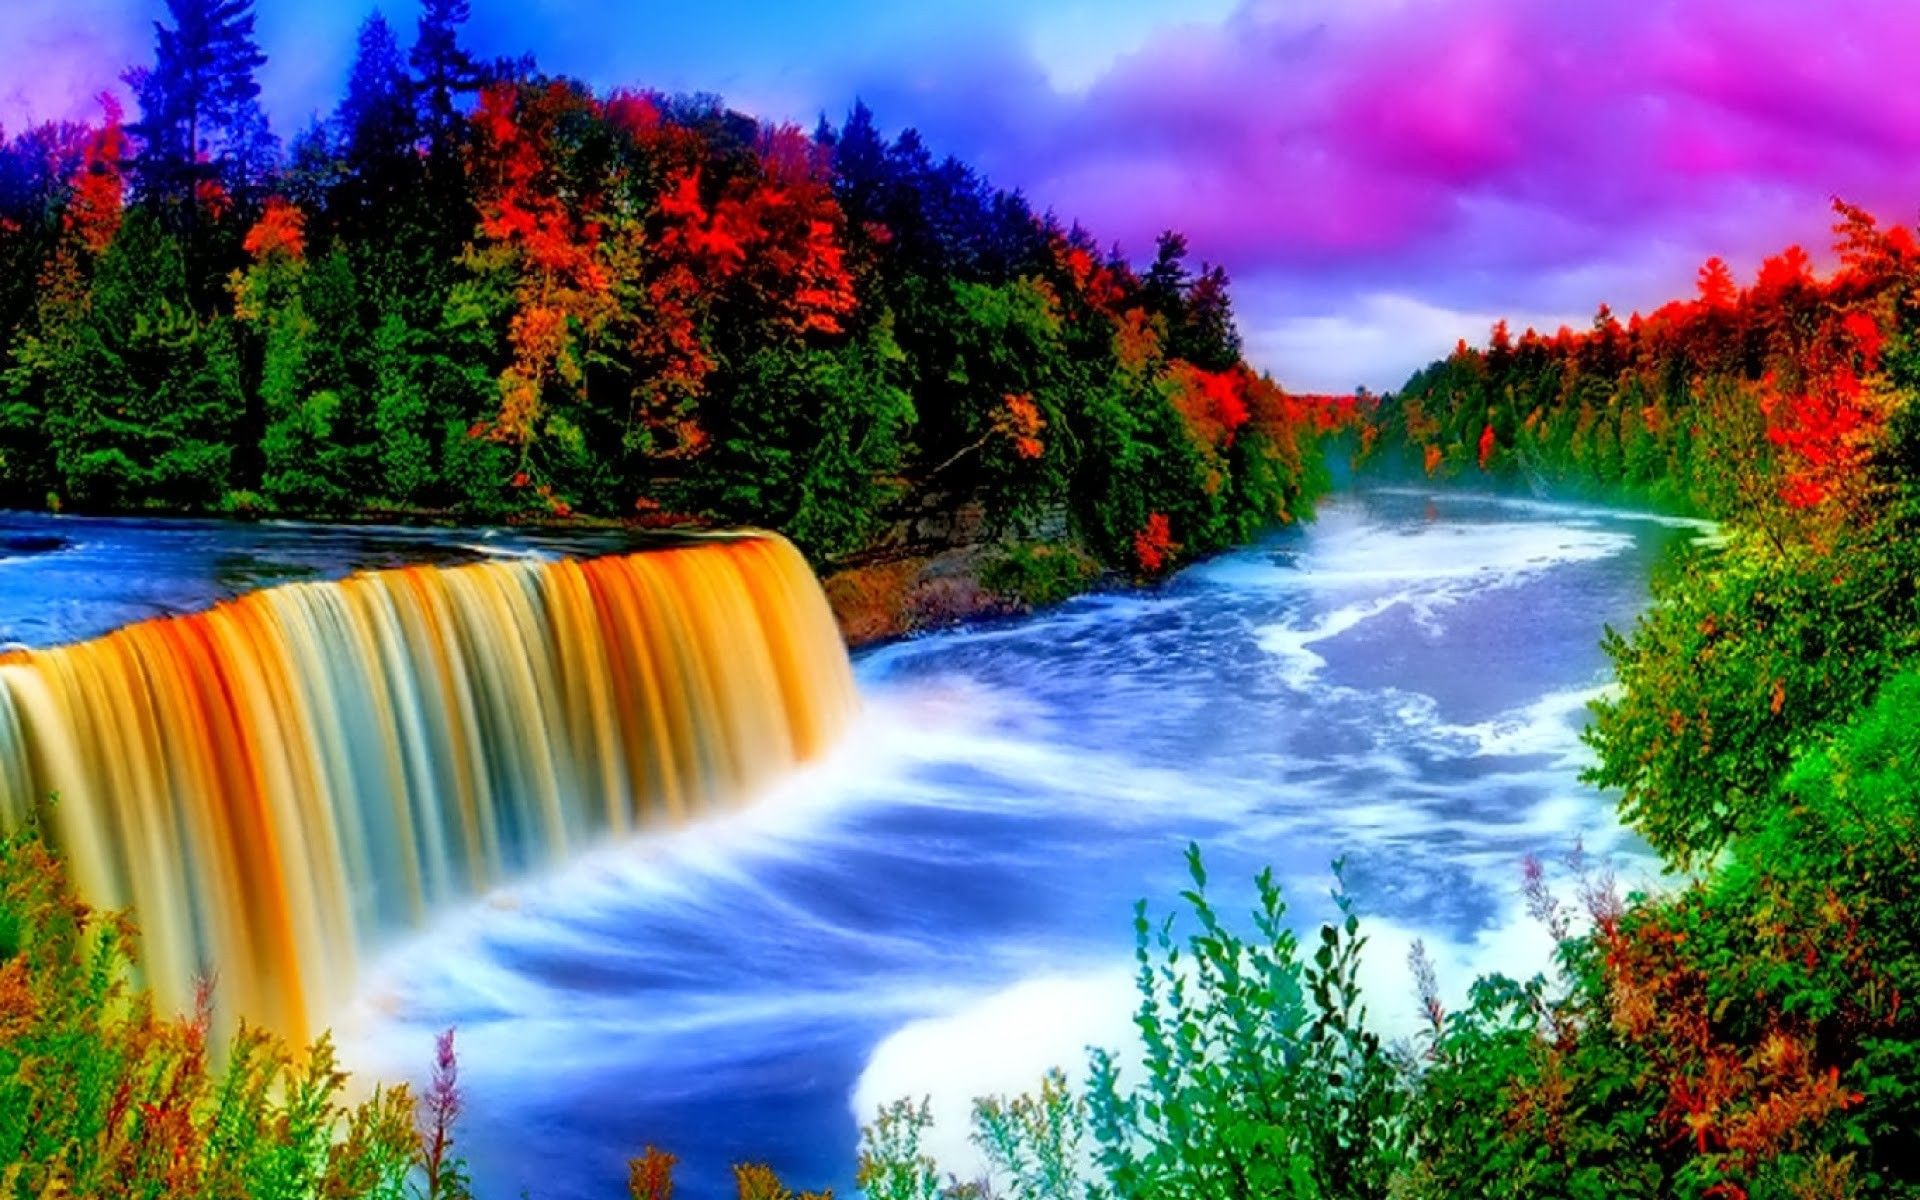 ♥﻿ღೋƸ̵̡Ӝ̵̨̄Ʒღೋ♥. Rainbow waterfall, Waterfall wallpaper, Beautiful nature scenes